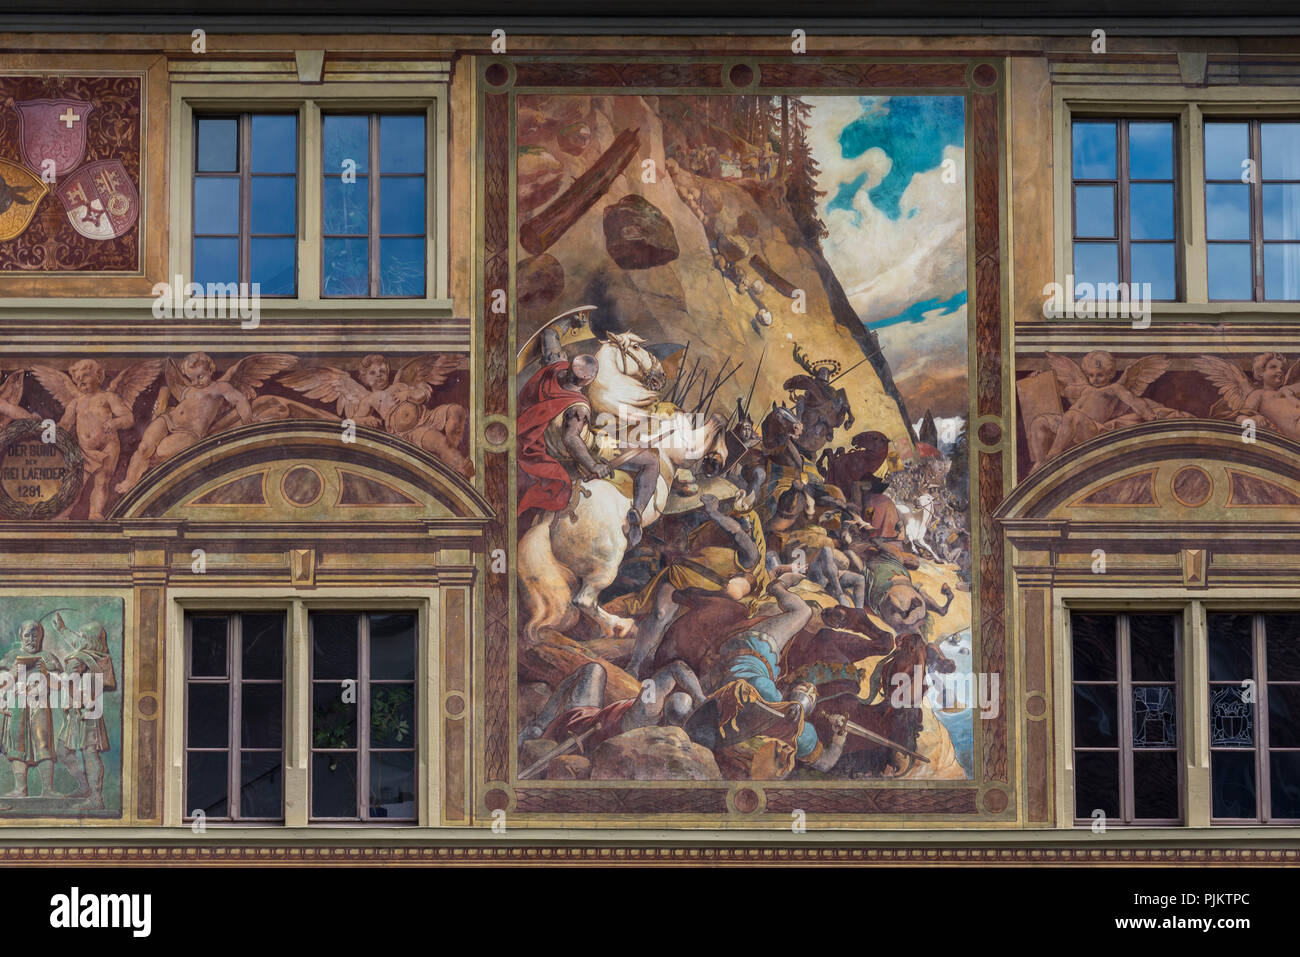 Town Hall historicist facade painting by Ferdinand Wagner, main square, Schwyz, Canton Schwyz, Switzerland Stock Photo